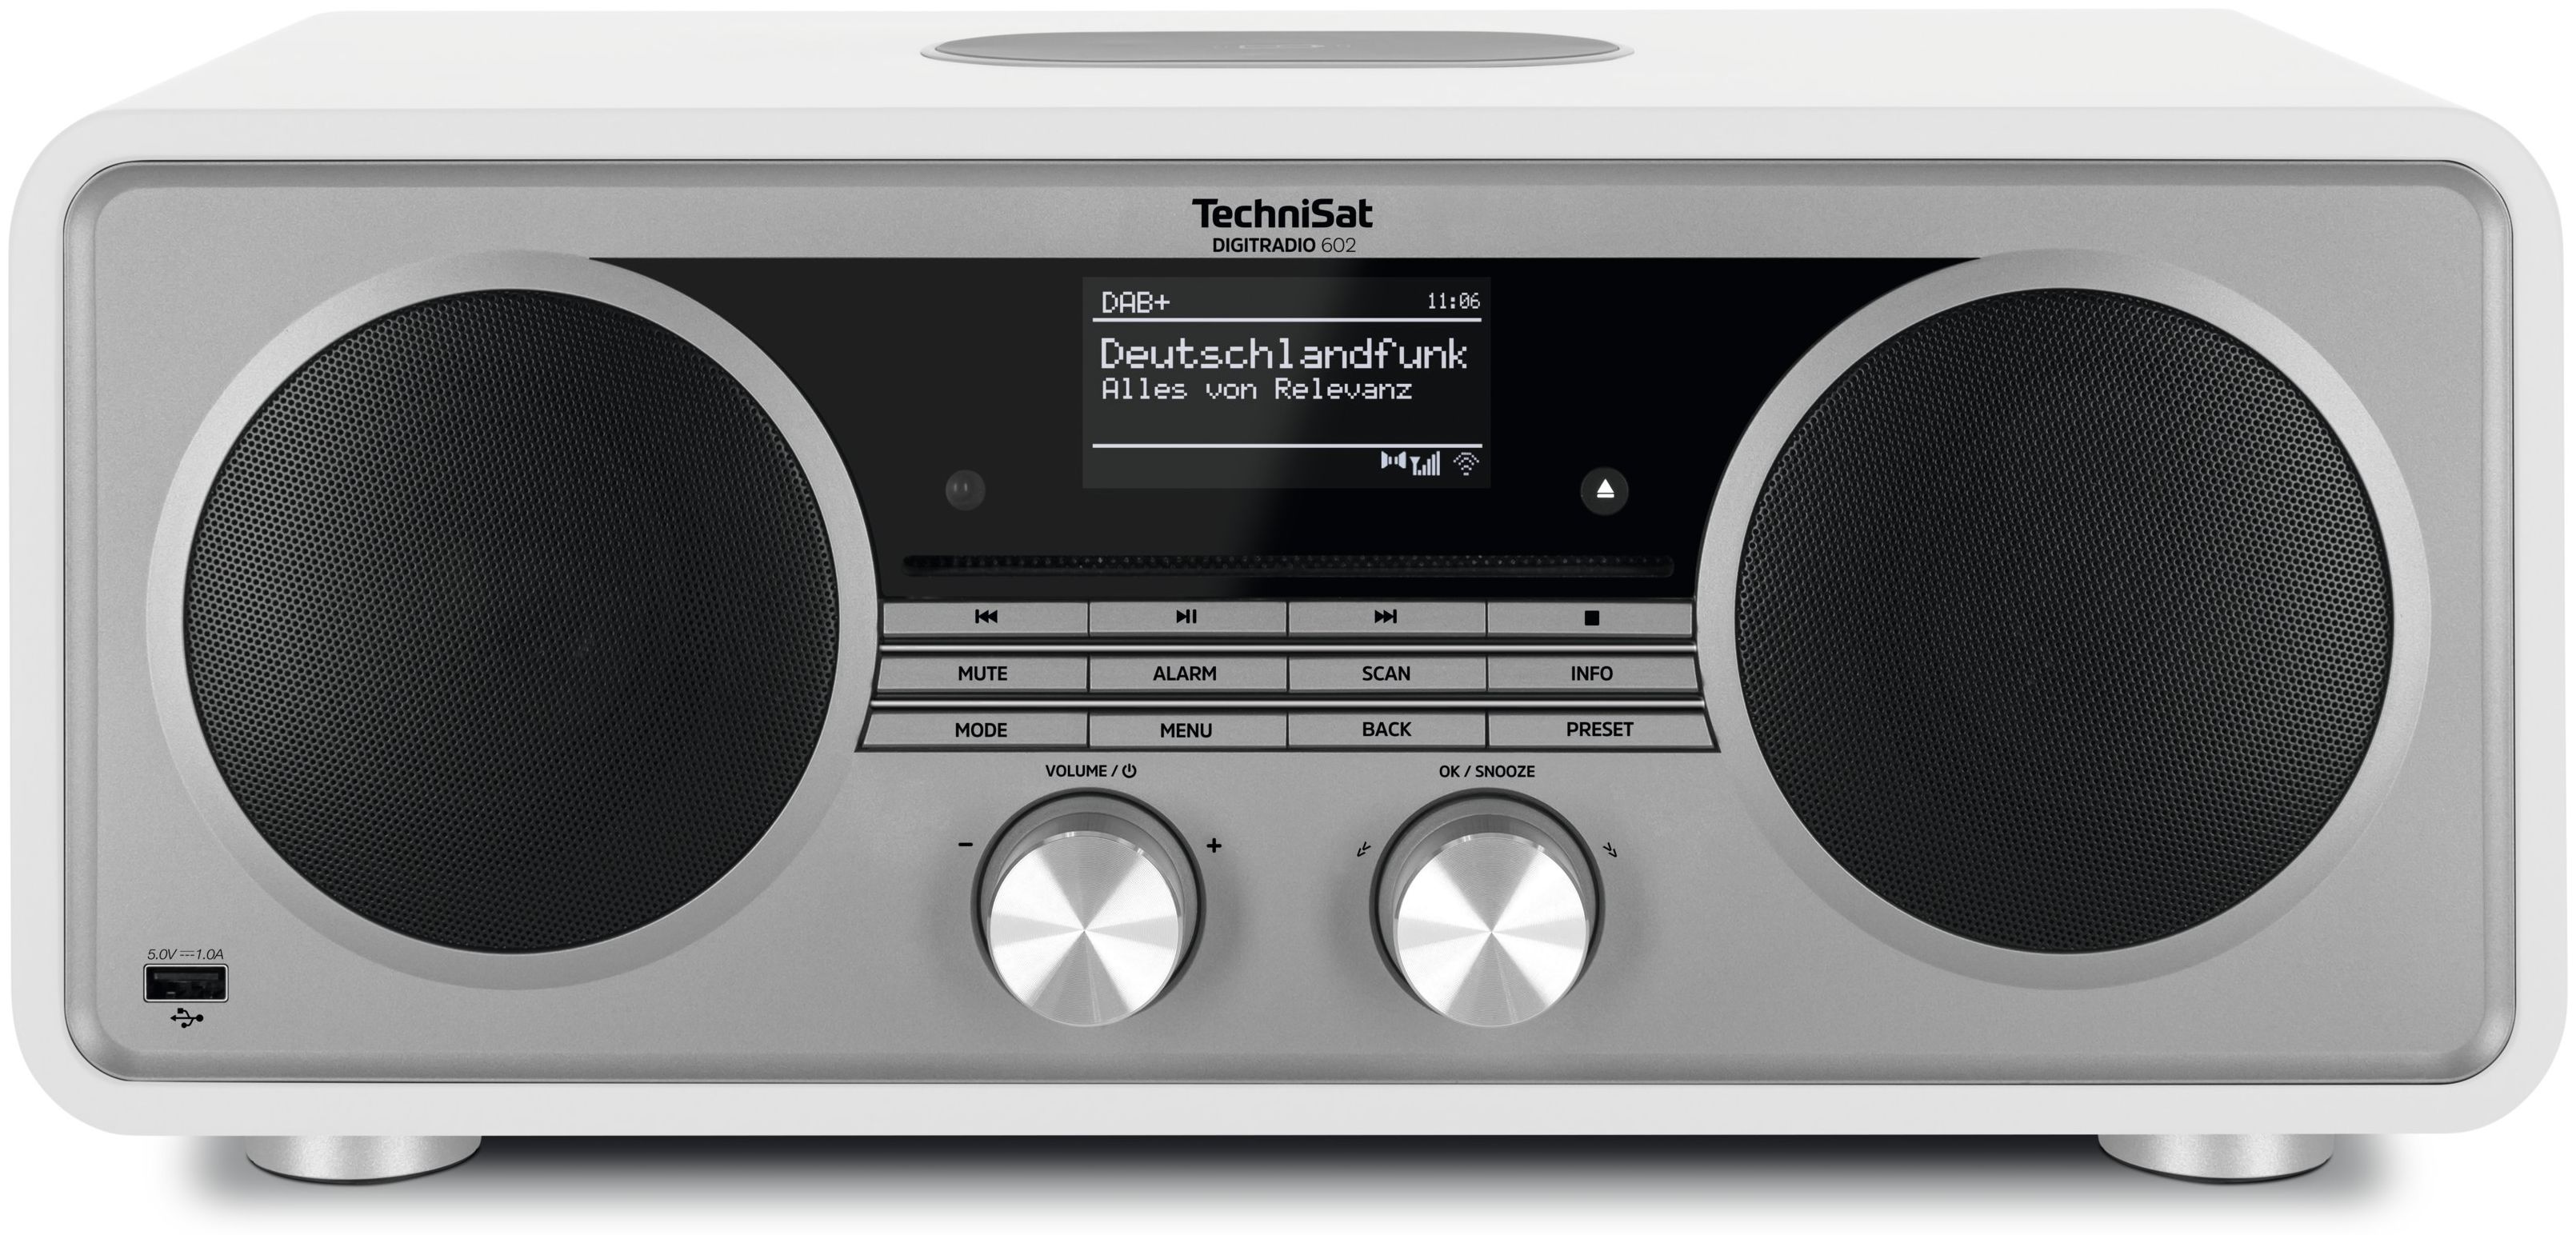 TechniSat Digitradio 602 Bluetooth DAB+, FM Internet Radio (Silber, Weiß)  von expert Technomarkt